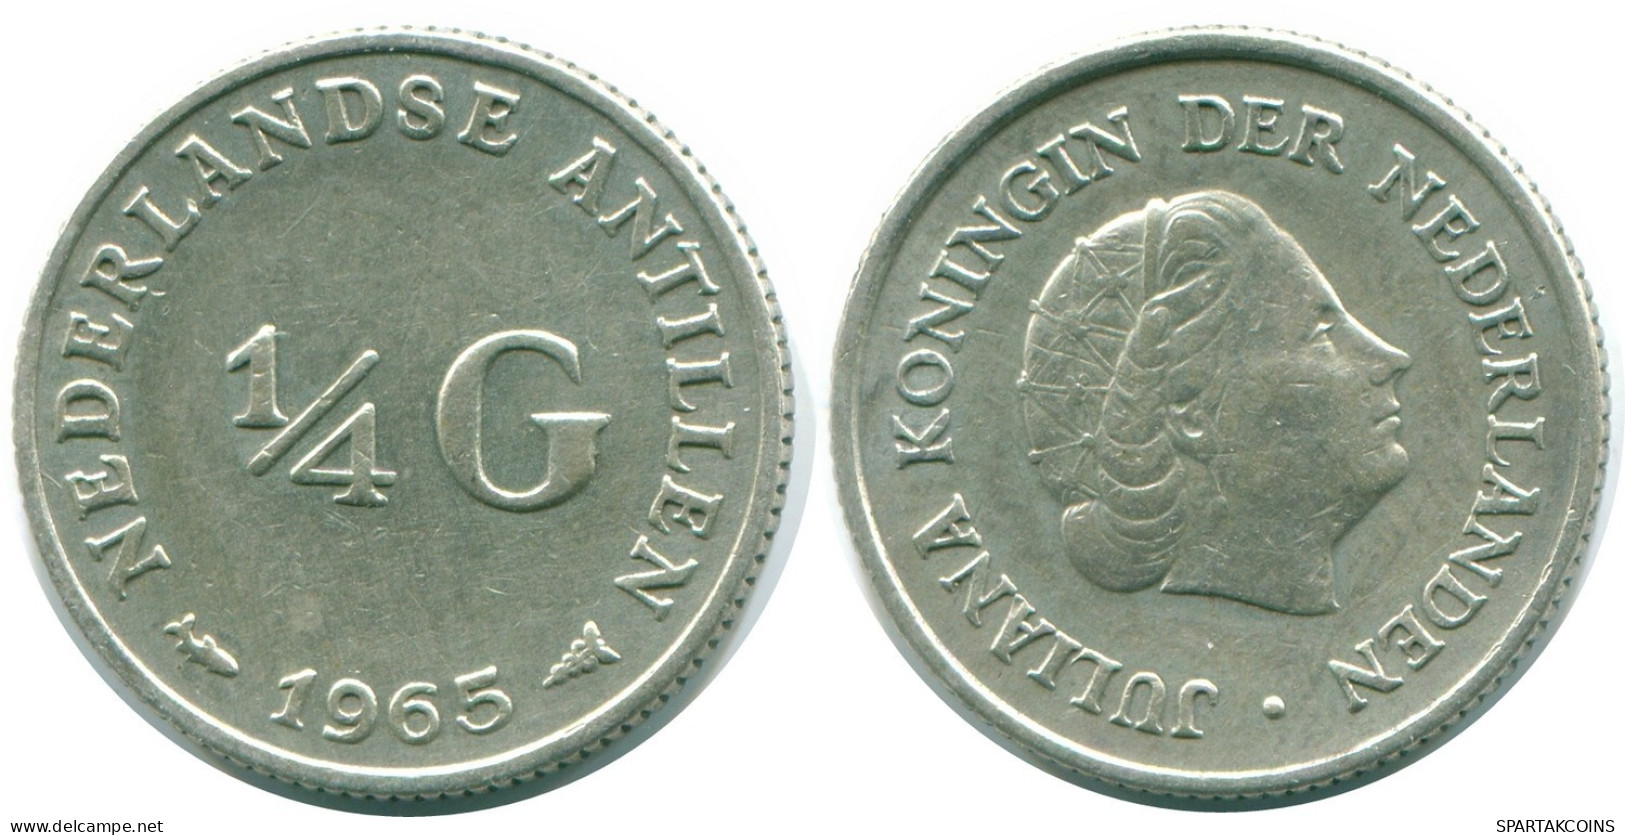 1/4 GULDEN 1965 NIEDERLÄNDISCHE ANTILLEN SILBER Koloniale Münze #NL11301.4.D.A - Nederlandse Antillen